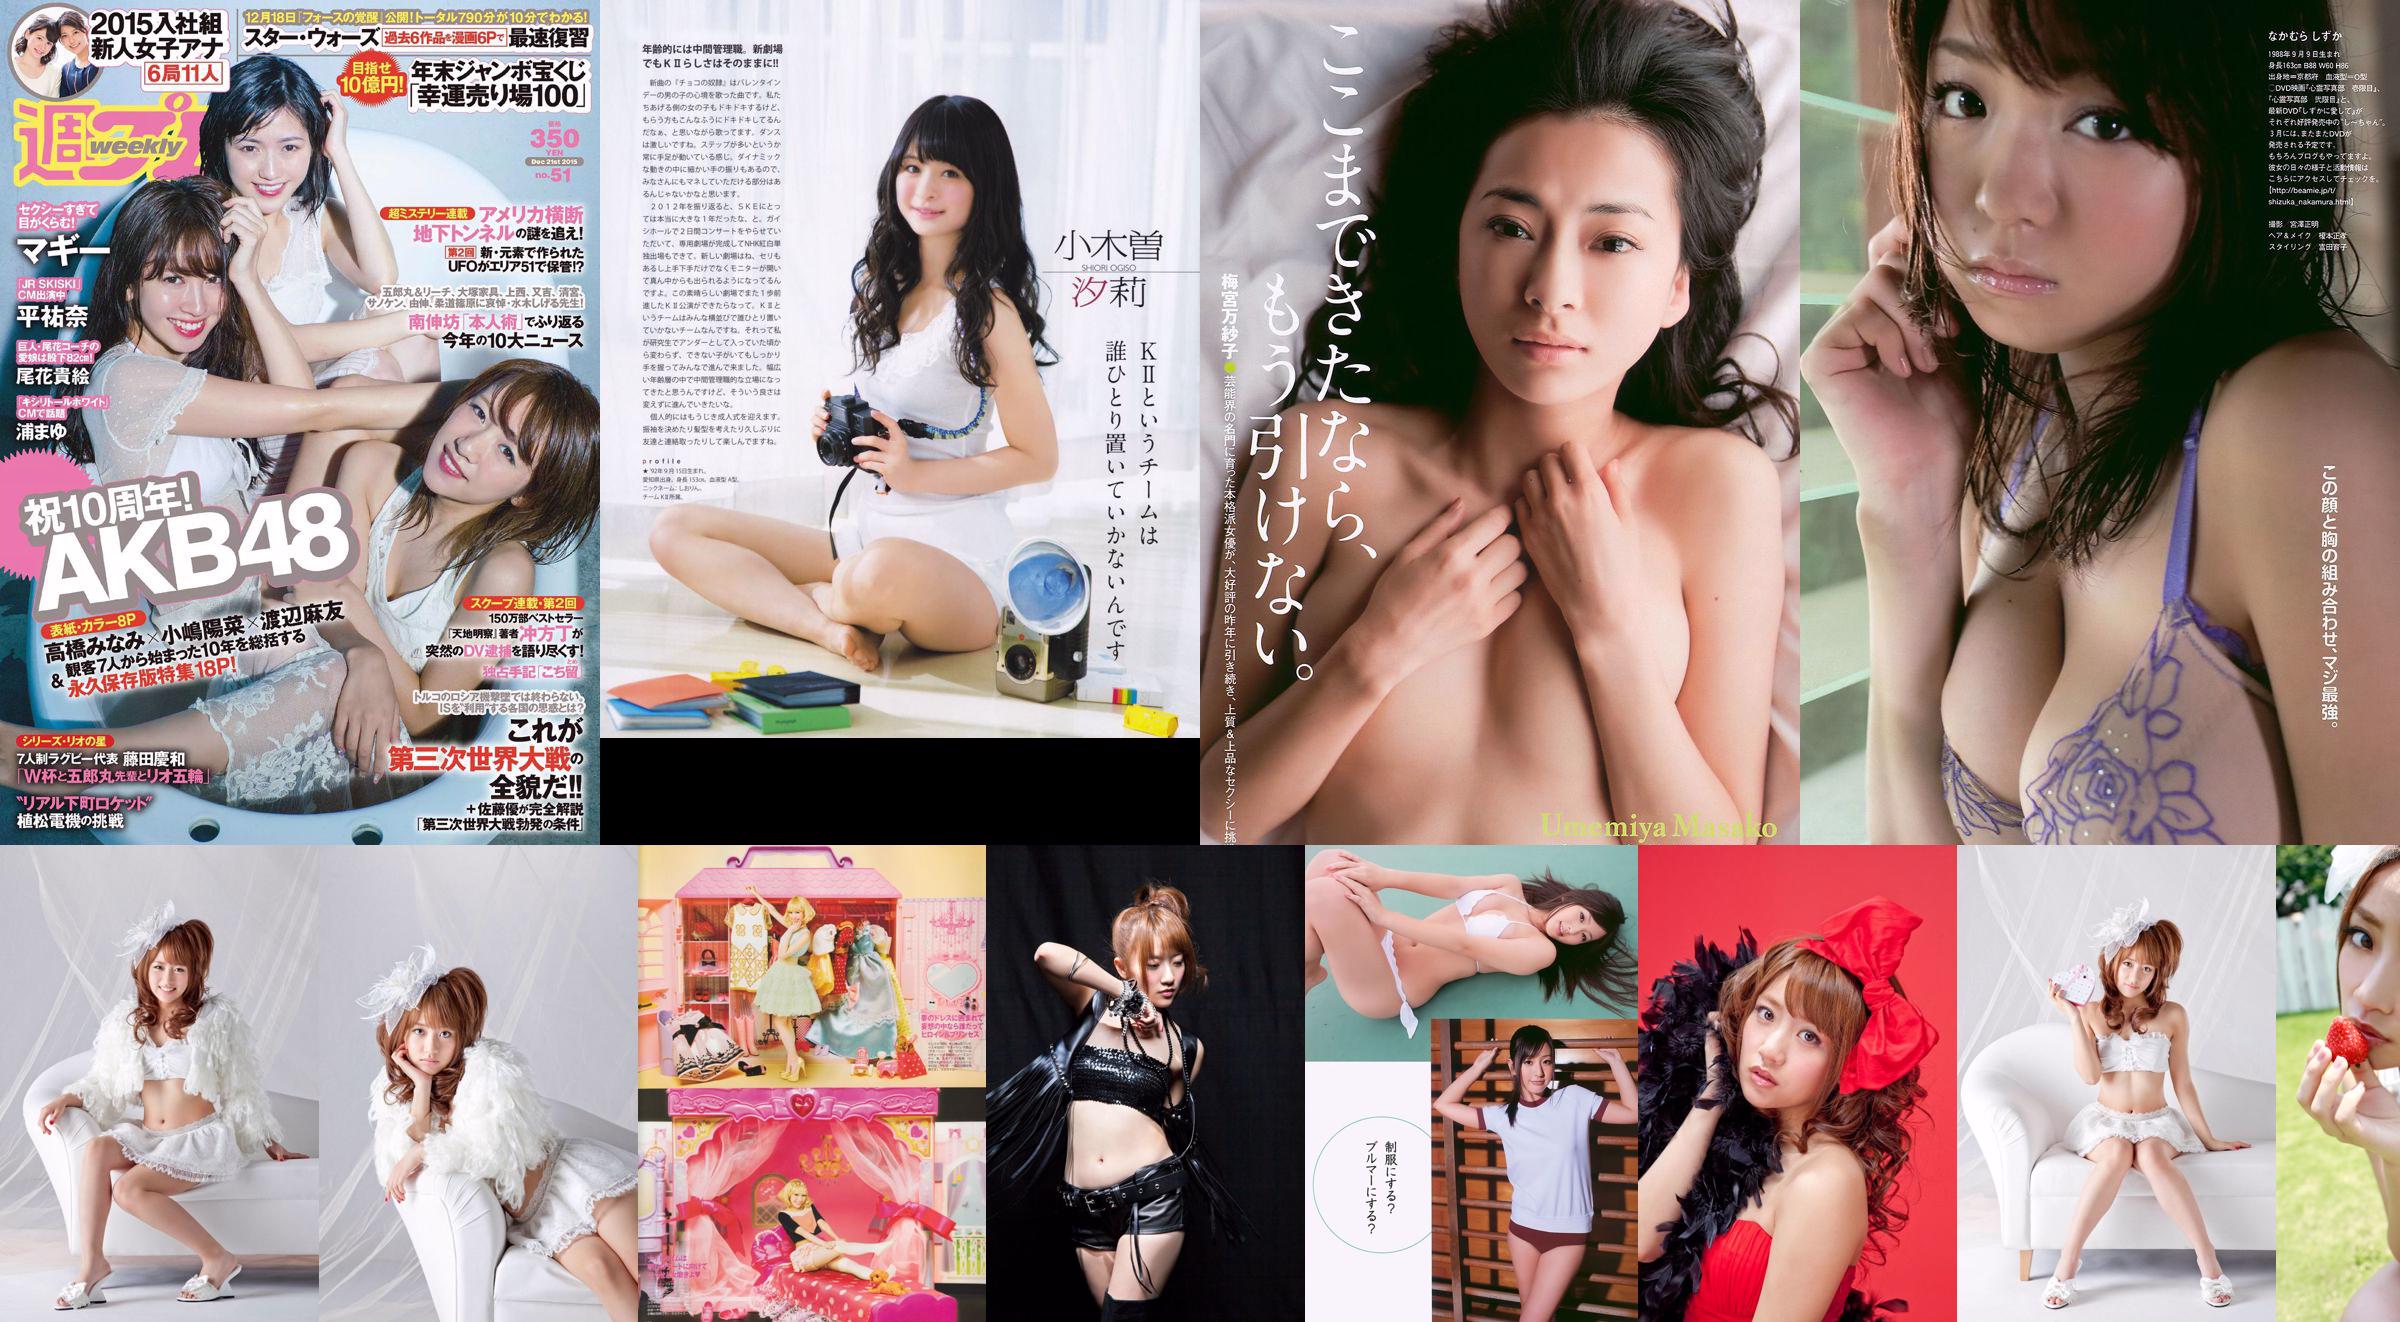 [Bomb Magazine] 2013 No.02 Takahashi Minami Matsui Jurina Kasai Tomomi Kitahara Riehi Photo magazine No.d04299 Página 1